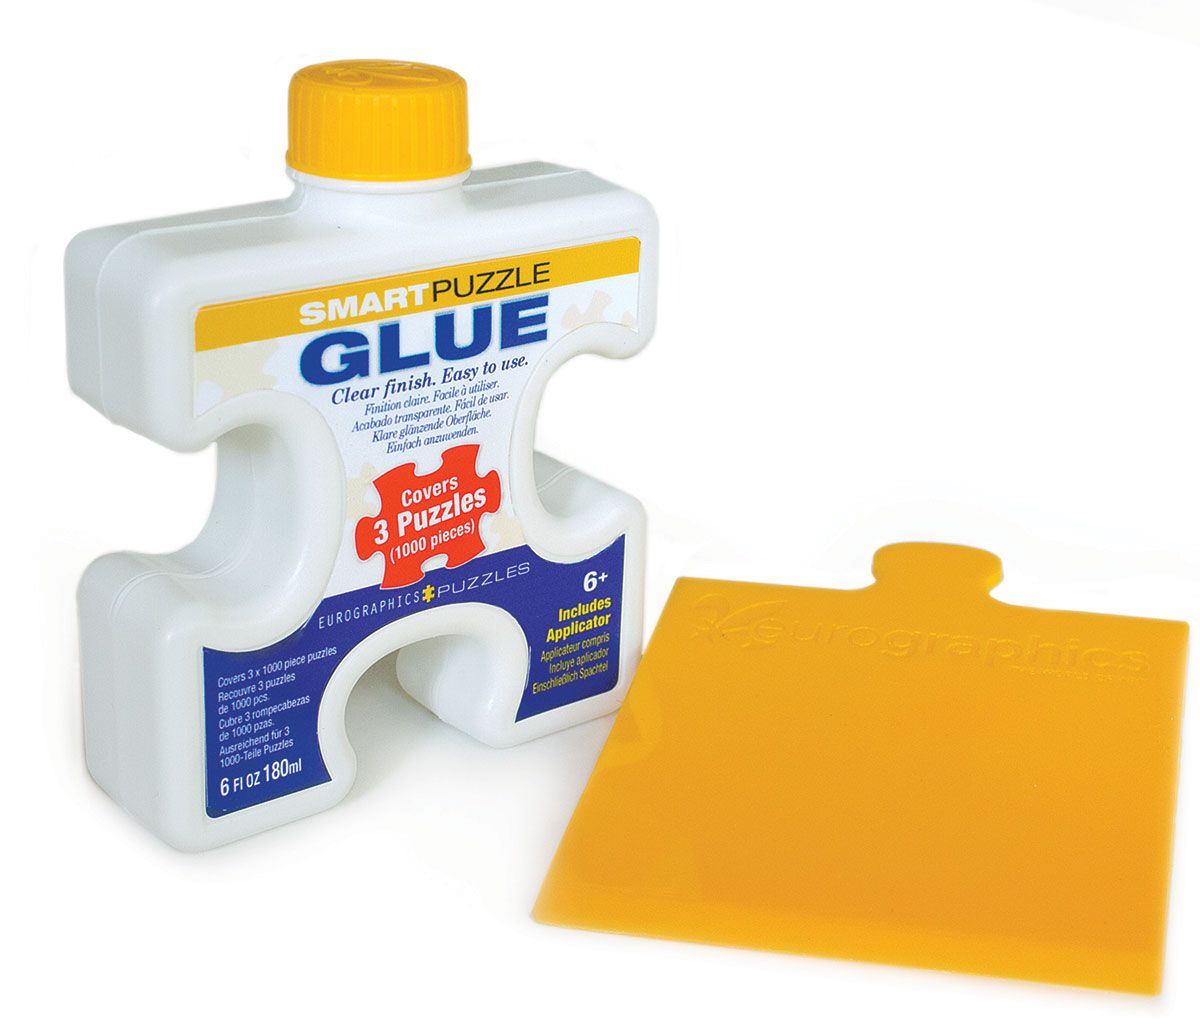 Smart-Puzzle Glue